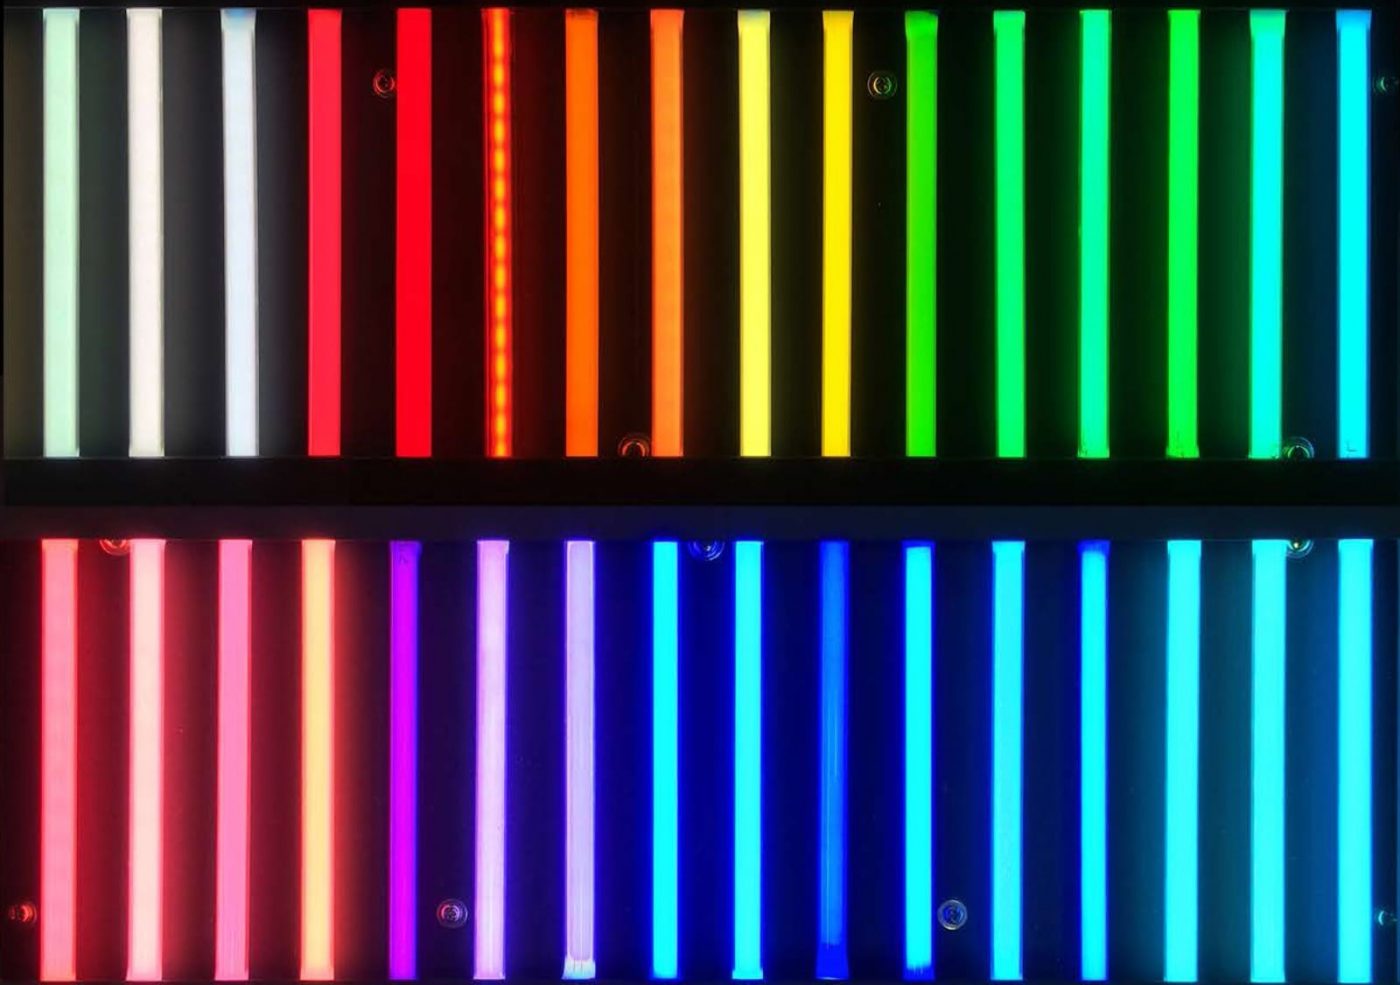 ガス本来の色と、ガラス管の色を掛け合わせてできるネオン管のカラーチャート。